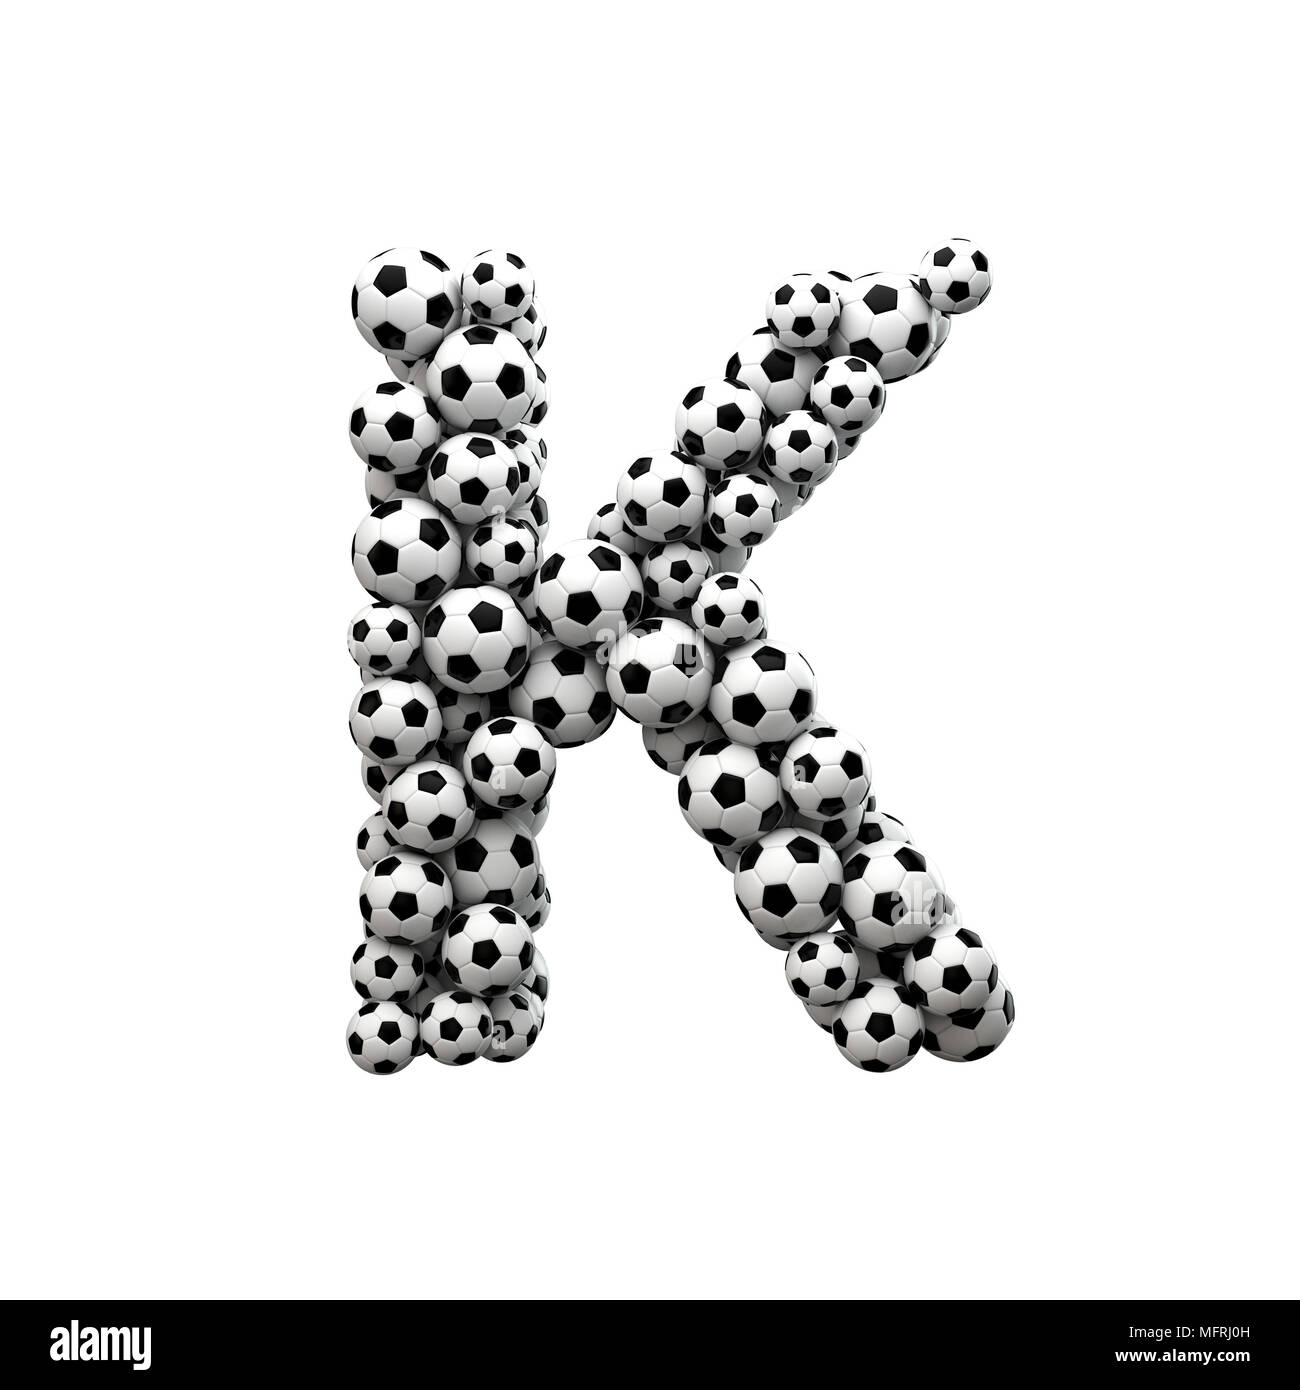 Letra mayúscula K font hechas a partir de una colección de balones de fútbol. 3D Rendering Foto de stock